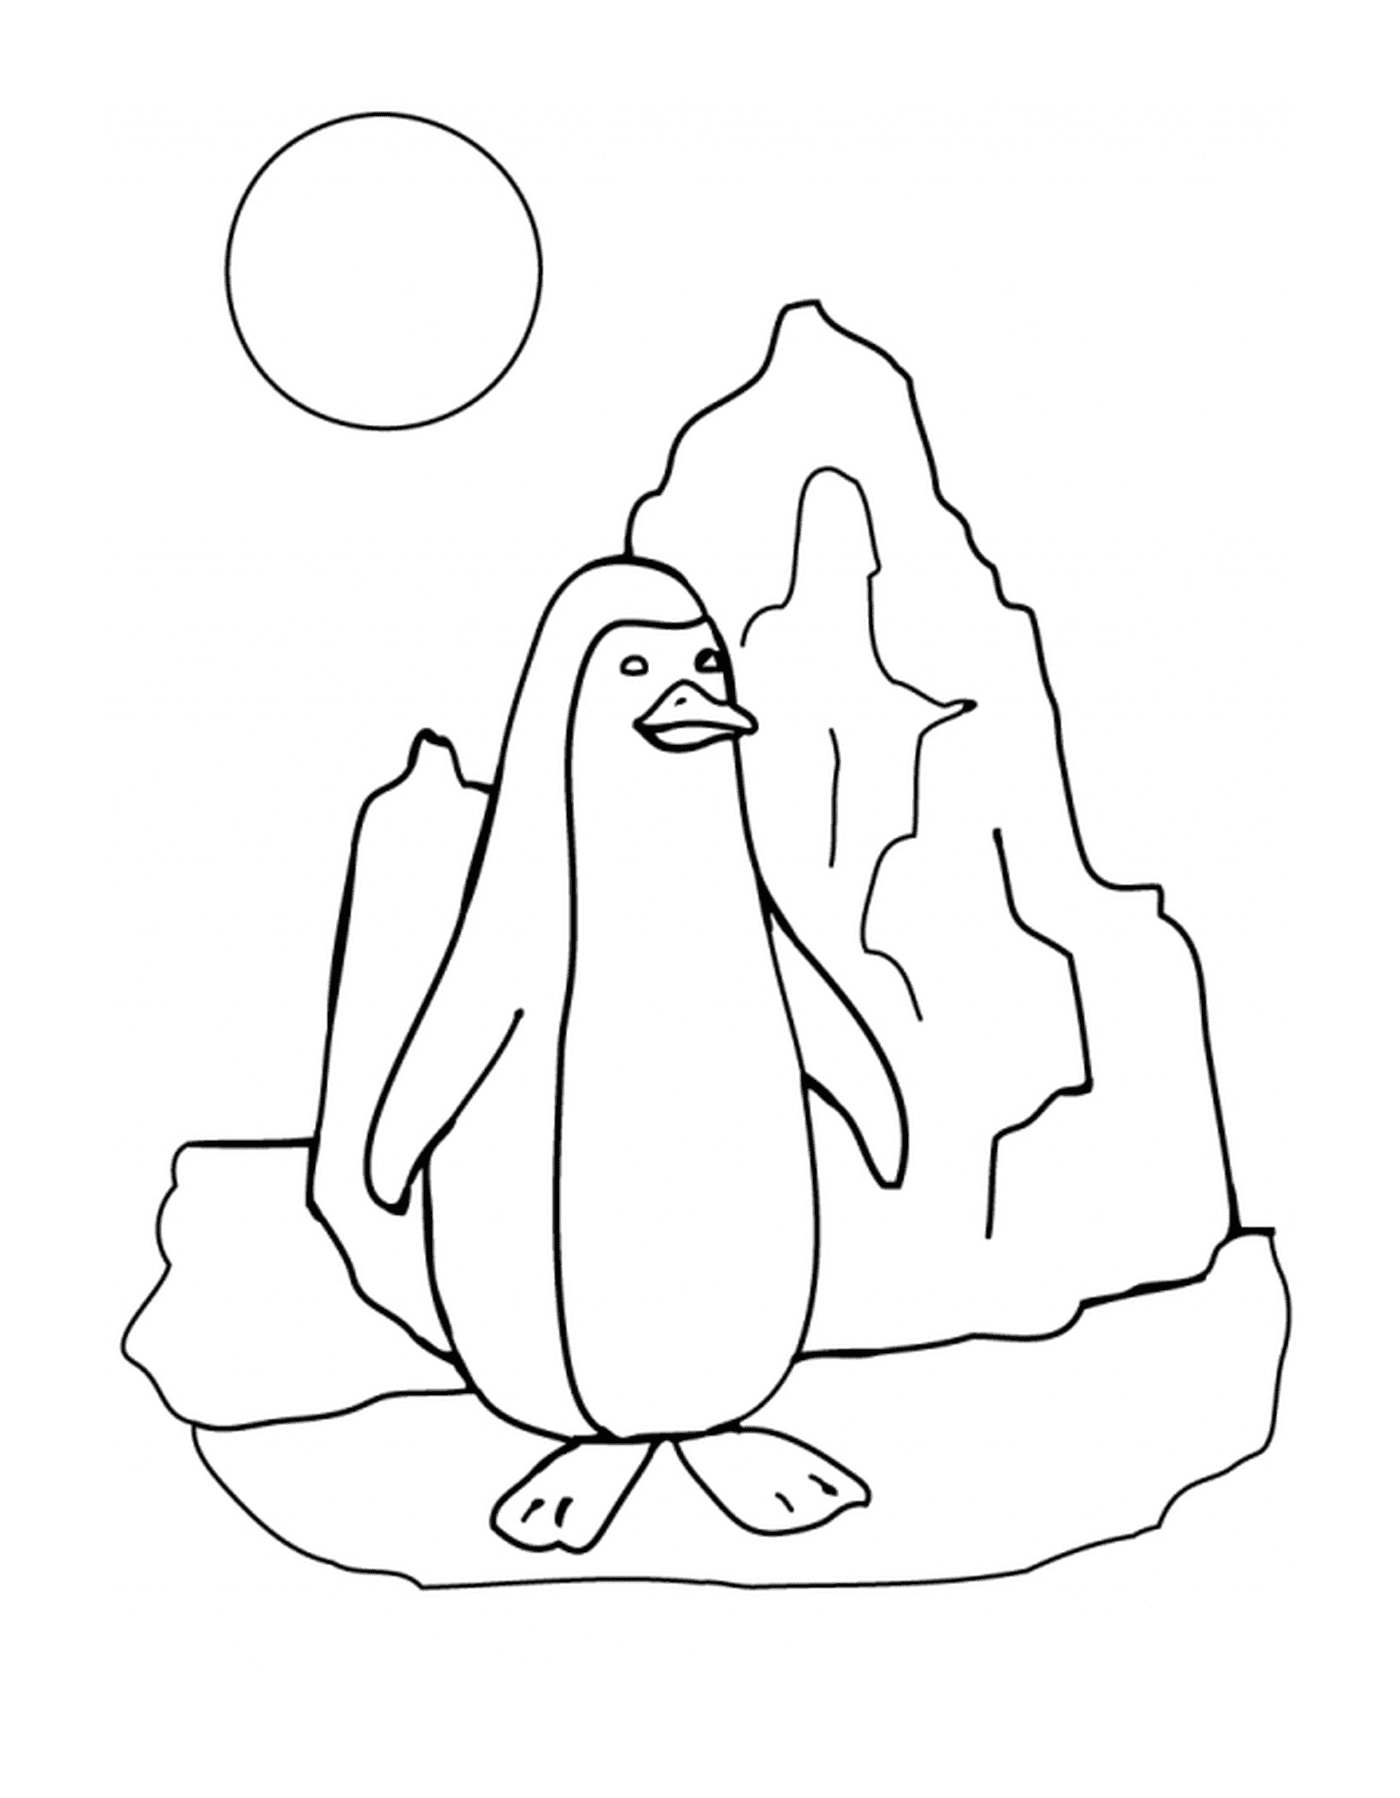   Pingouin sur la banquise ensoleillée 